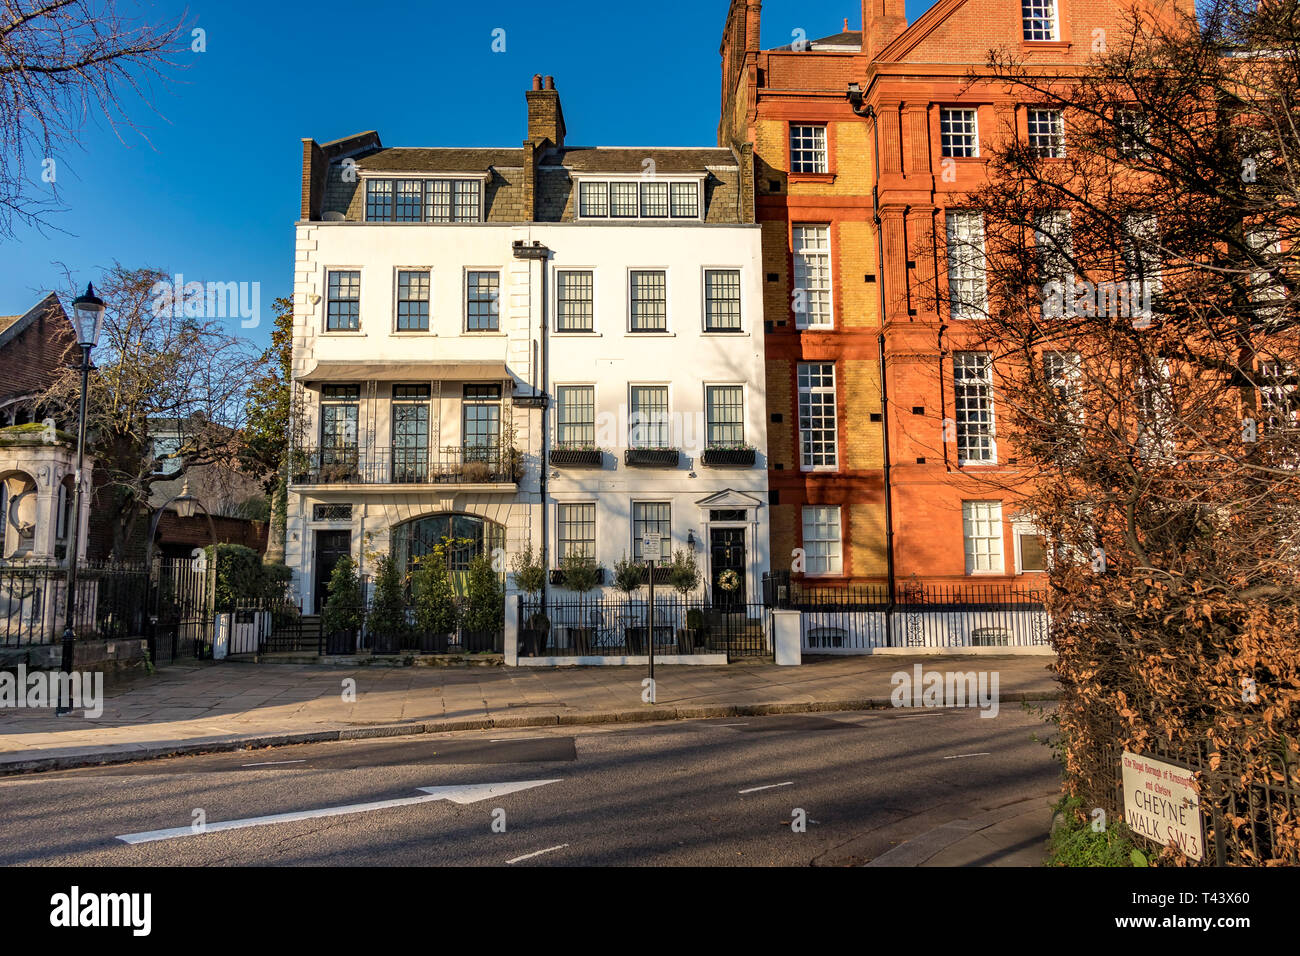 62 Cheyne Walk , a Grade II Listed Building in Chelsea Riverside, London, UK Stock Photo